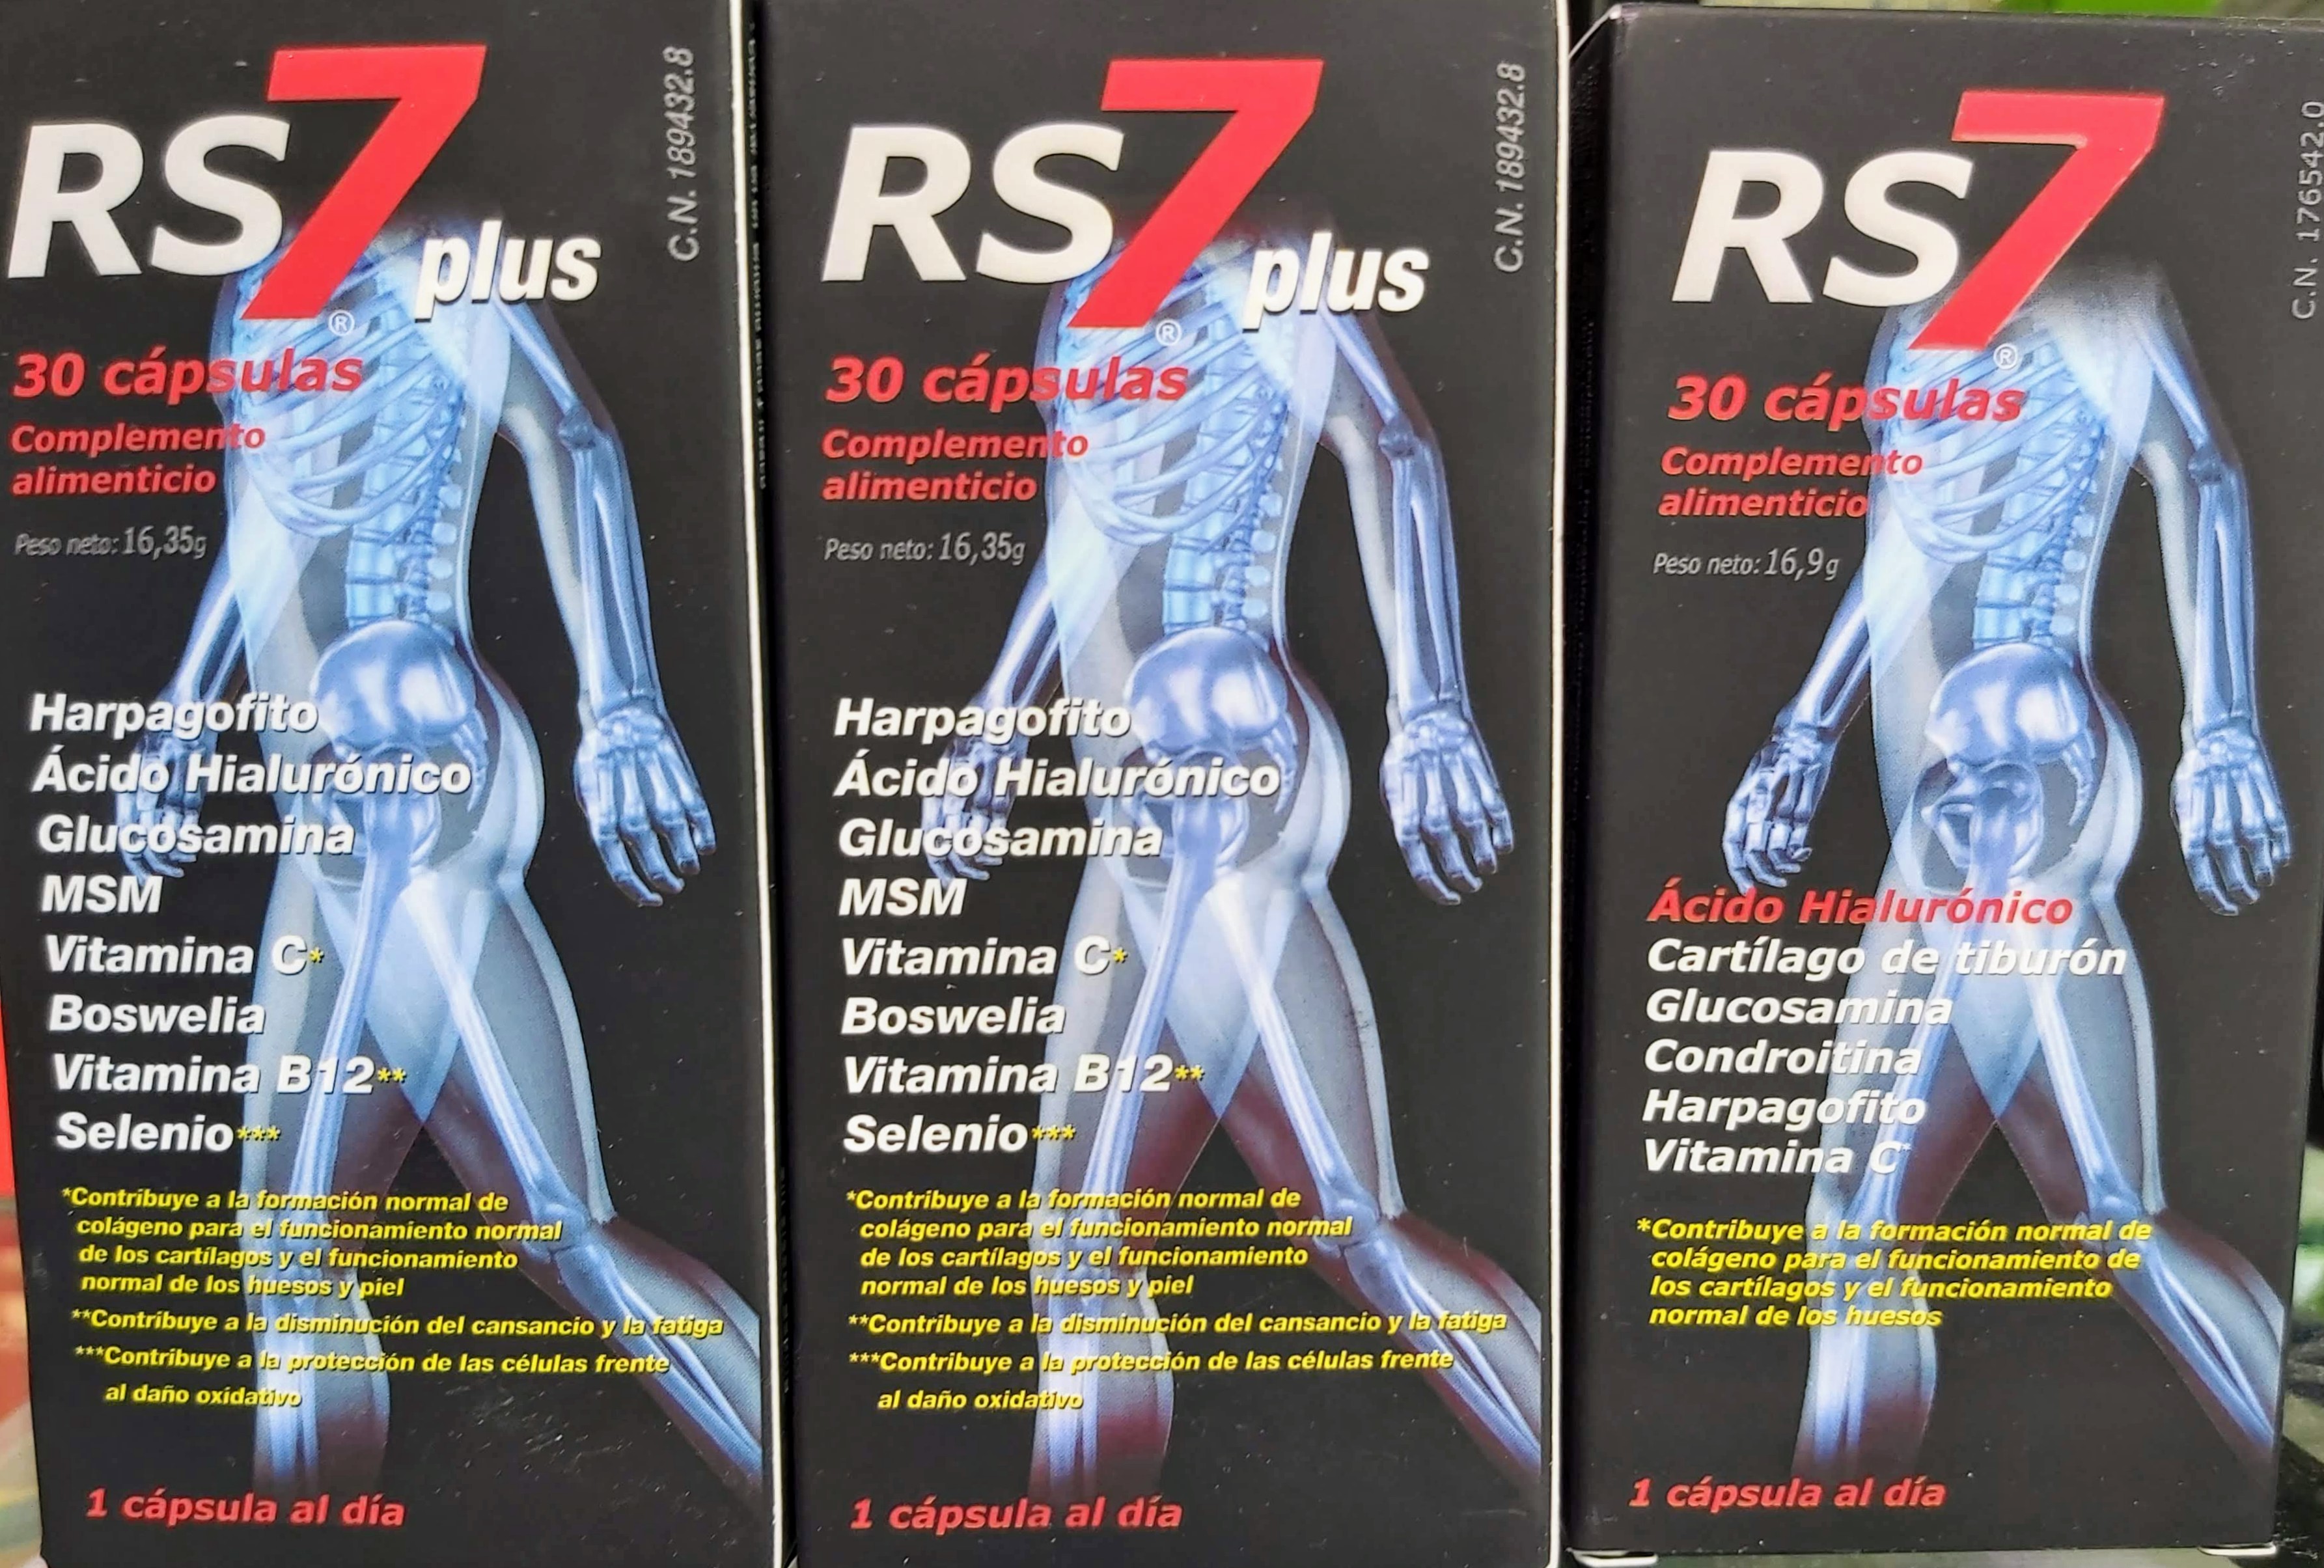 RS7 Plus articulaciones es un complemento alimenticio muy completo, útil para tratar lesiones relacionadas con los huesos, tendones, ligamentos, cartílagos CAMINAR Es sumamente beneficioso para luchar contra la artrosis, especialmente para la salud de nuestras rodillas. Es importante que diariamente hagamos un paseo para también controlar o perder peso.